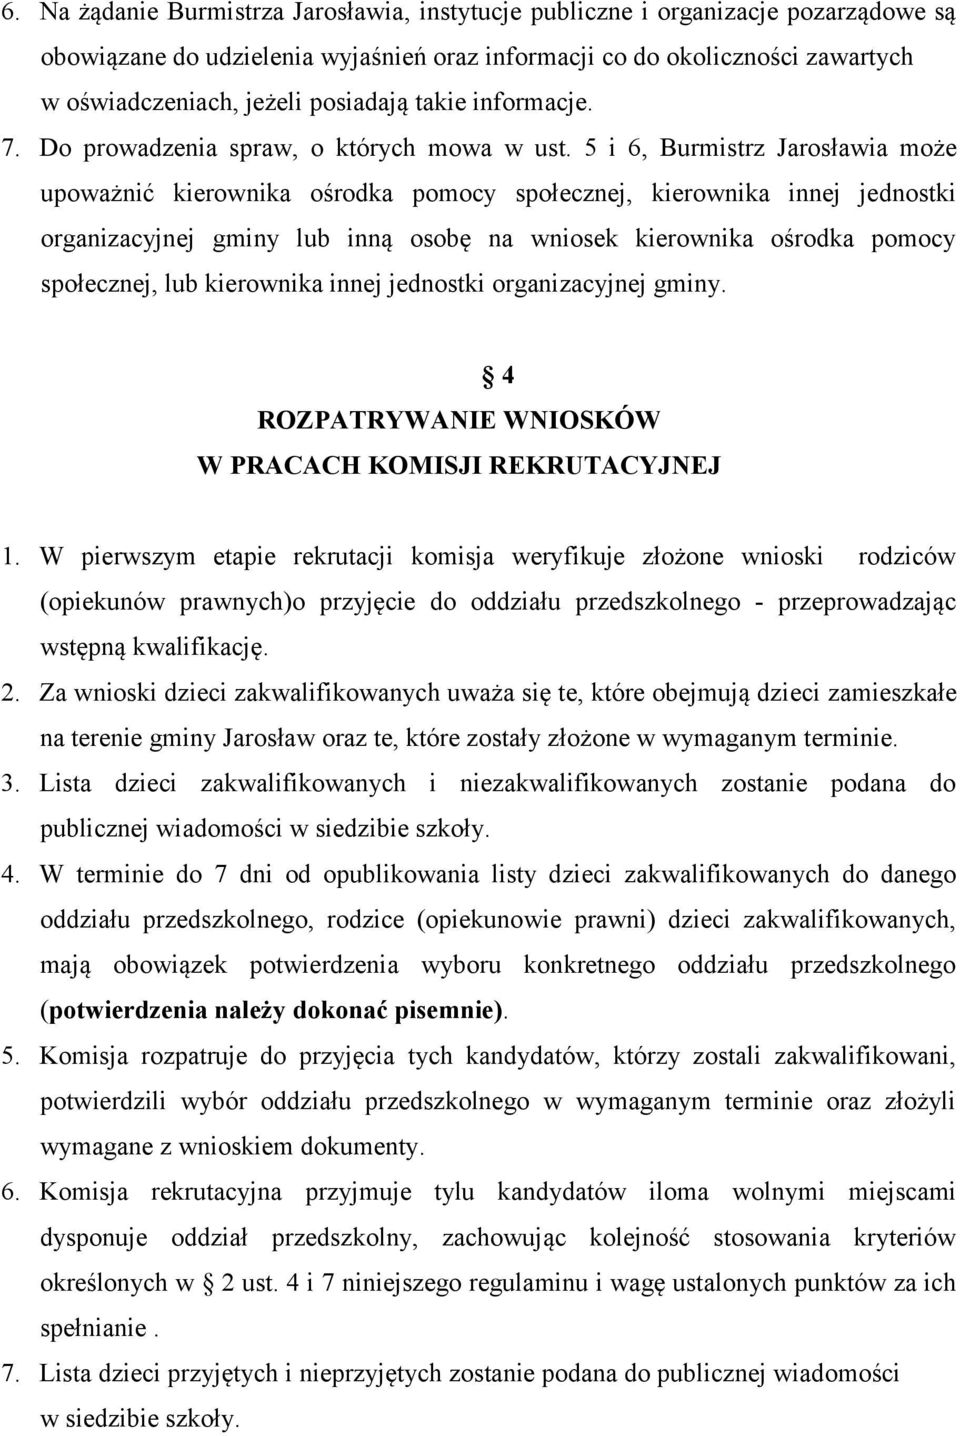 5 i 6, Burmistrz Jarosławia może upoważnić kierownika ośrodka pomocy społecznej, kierownika innej jednostki organizacyjnej gminy lub inną osobę na wniosek kierownika ośrodka pomocy społecznej, lub